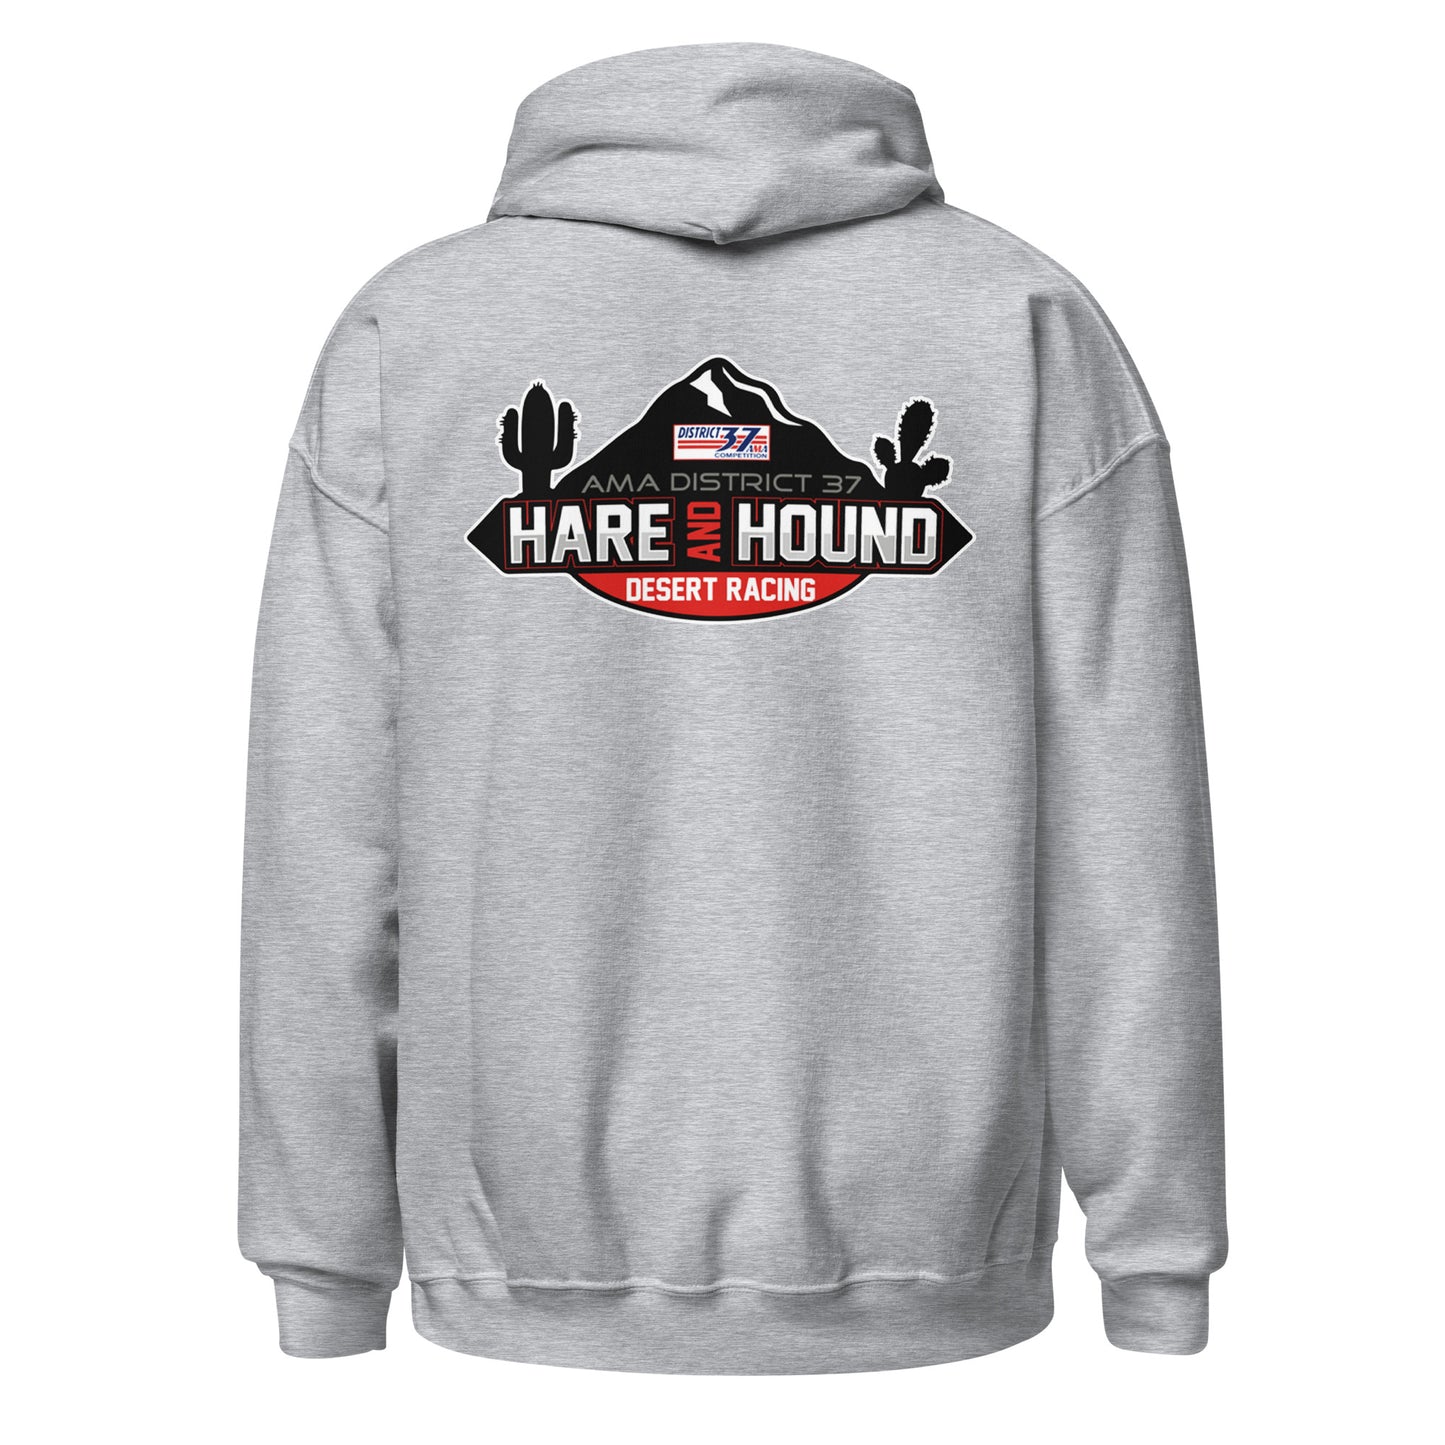 D37 Hare & Hound Series Hoodie - Adult Size Hoodie